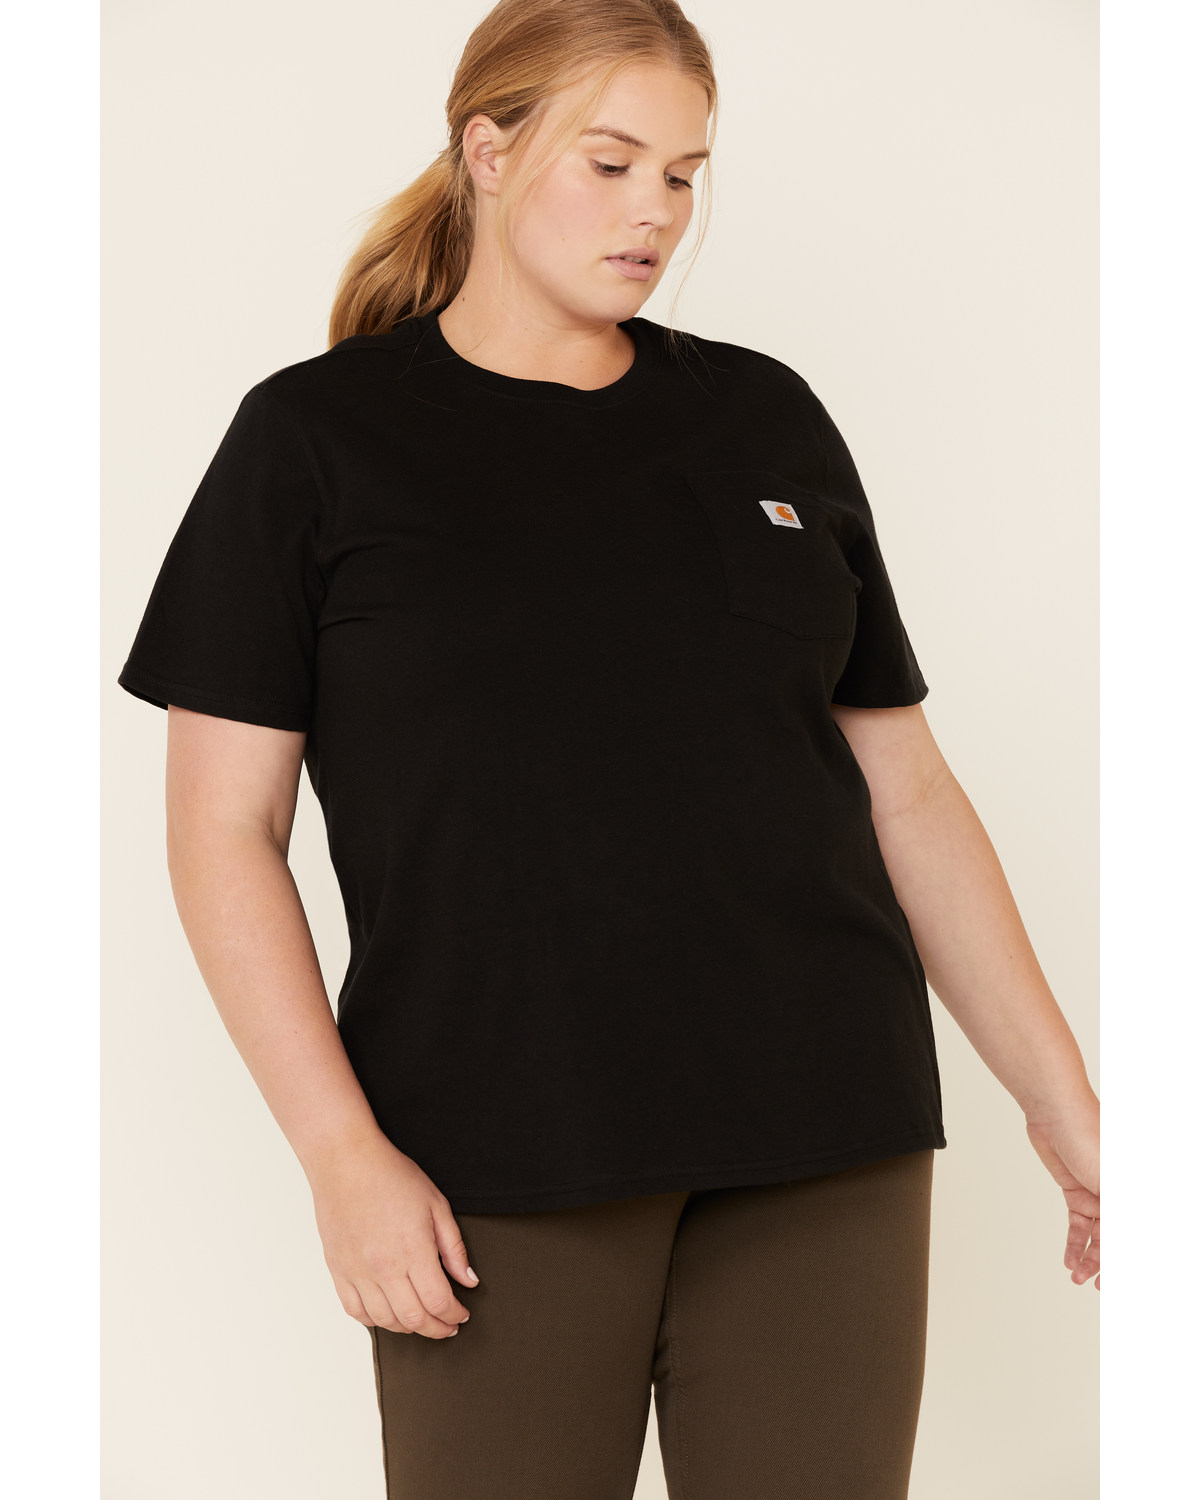 Carhartt Women's Chest Pocket Sleeve Work T-Shirt - Plus